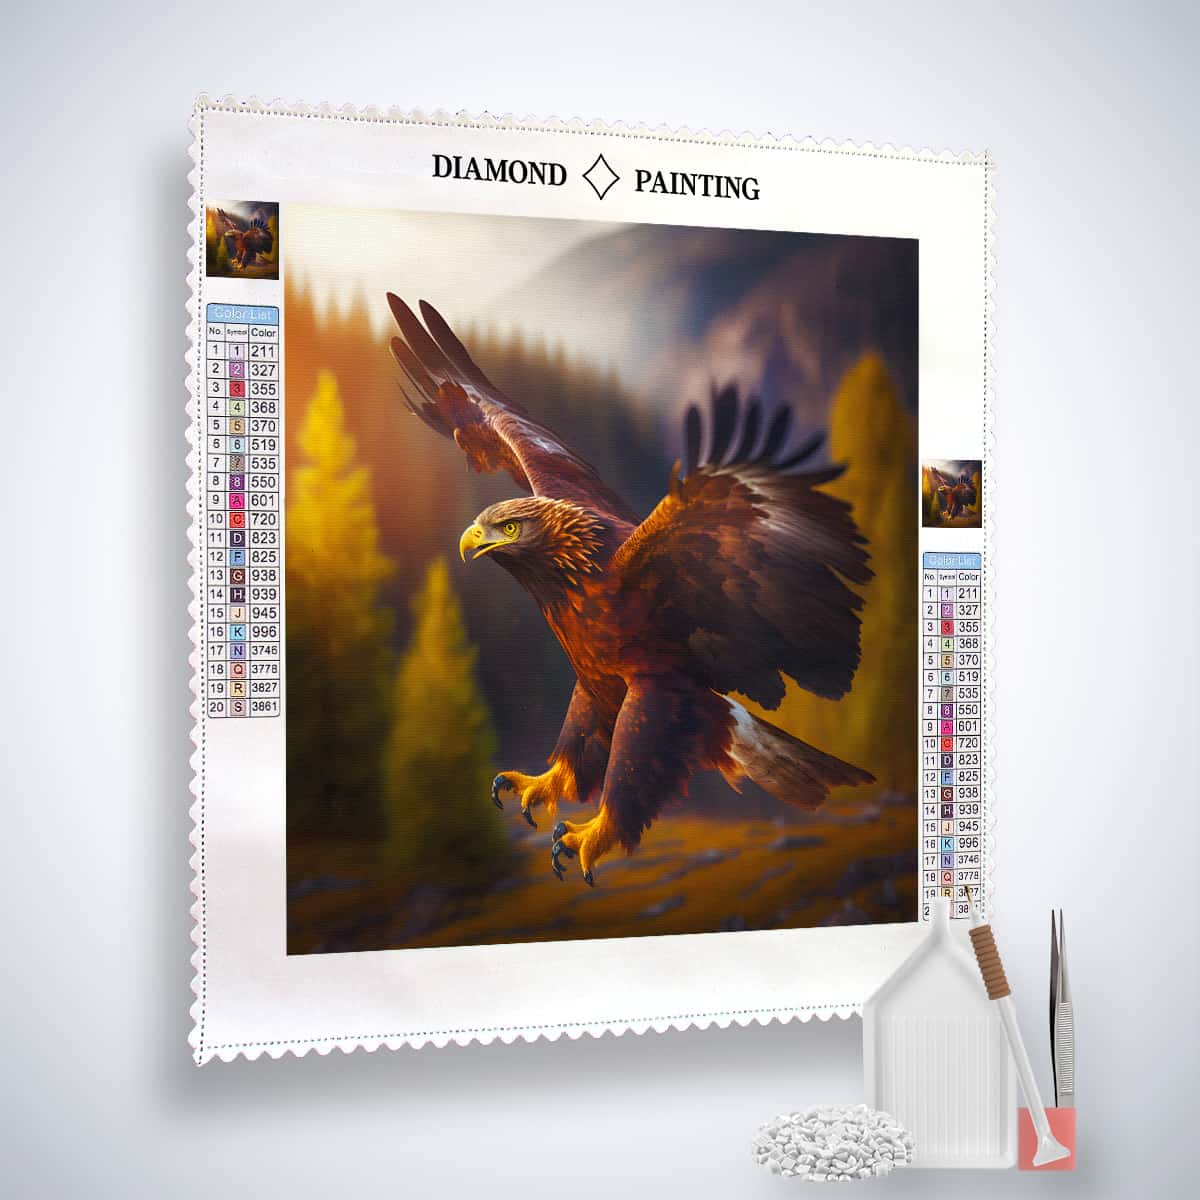 Diamond Painting - Adler seitlich - gedruckt in Ultra-HD - Adler, Neu eingetroffen, Quadratisch, Tiere